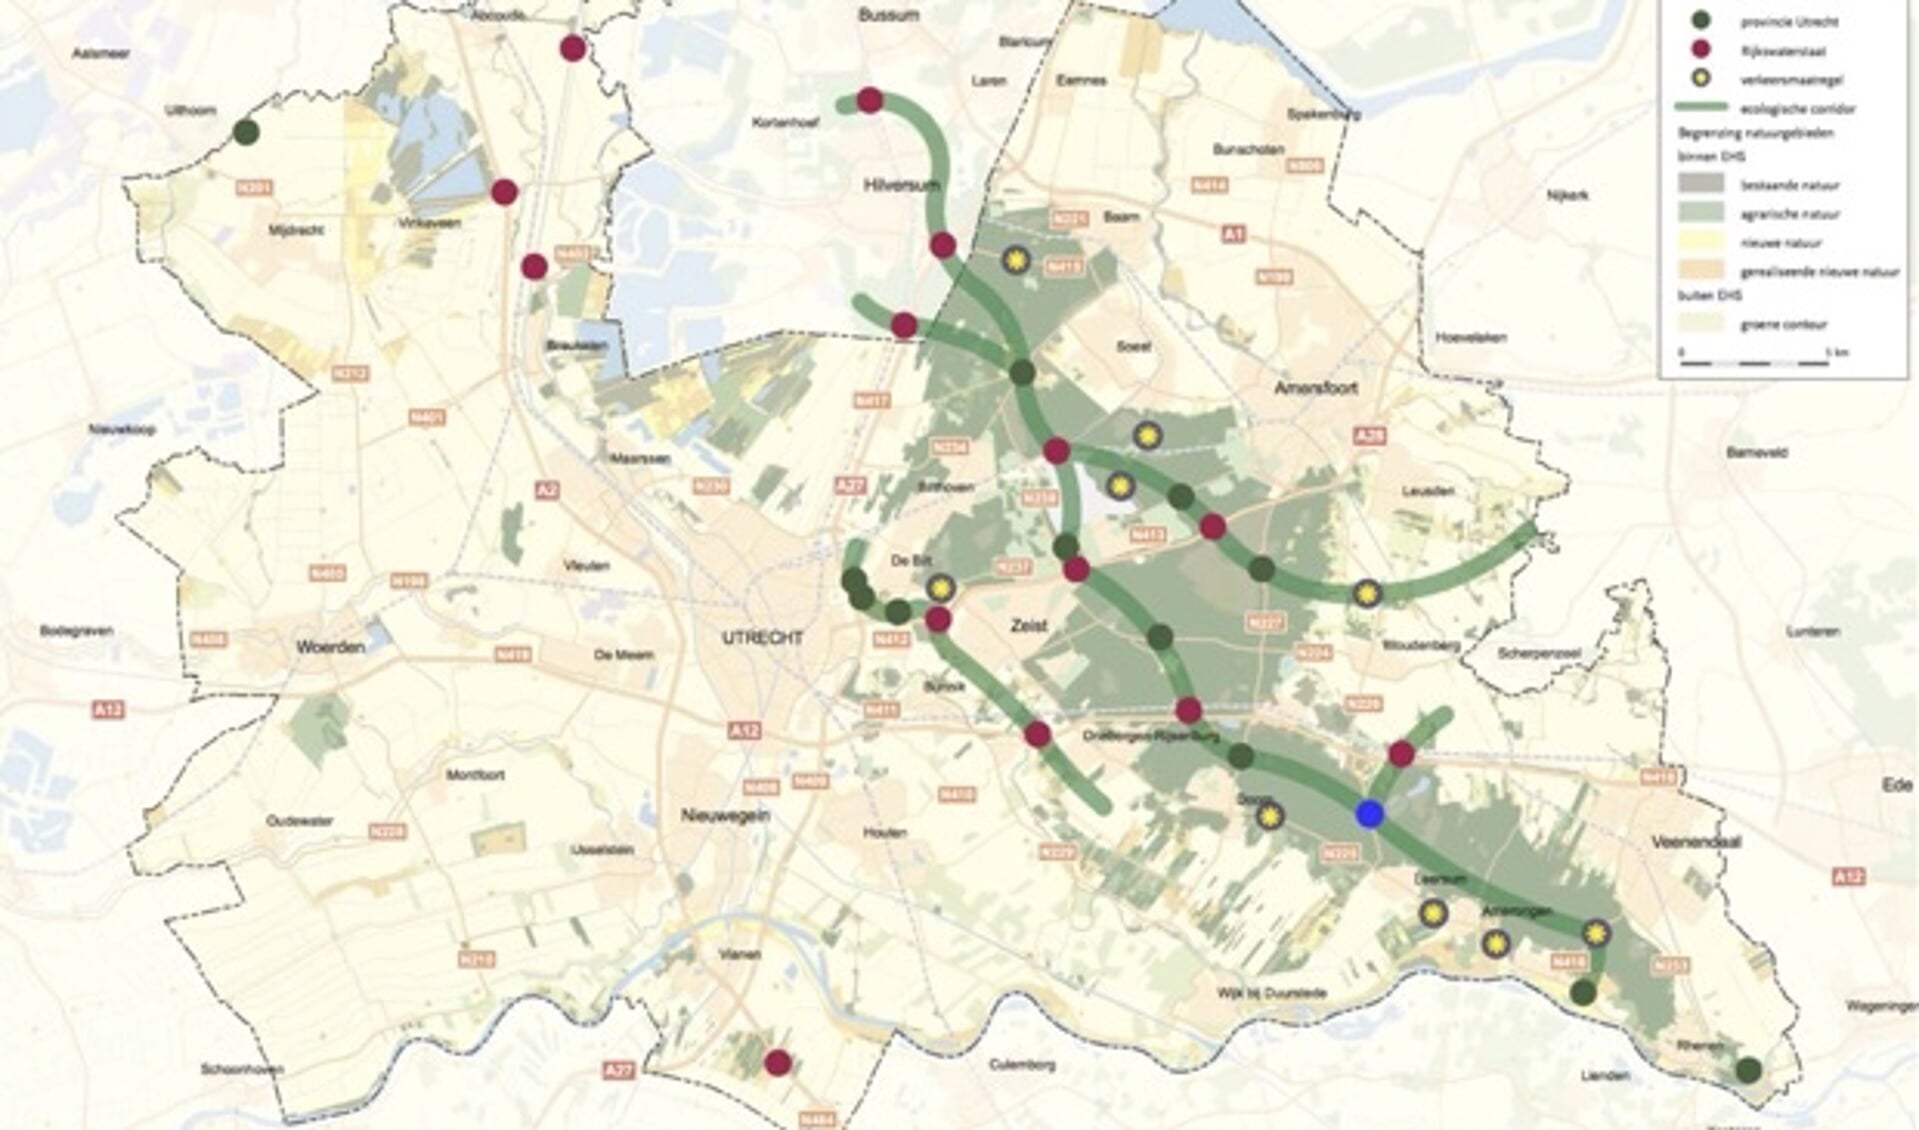 Het ecoduct (blauwe punt) vormt een schakel in de verbinding tussen het zuidelijke en middendeel van Utrechtse Heuvelrug.